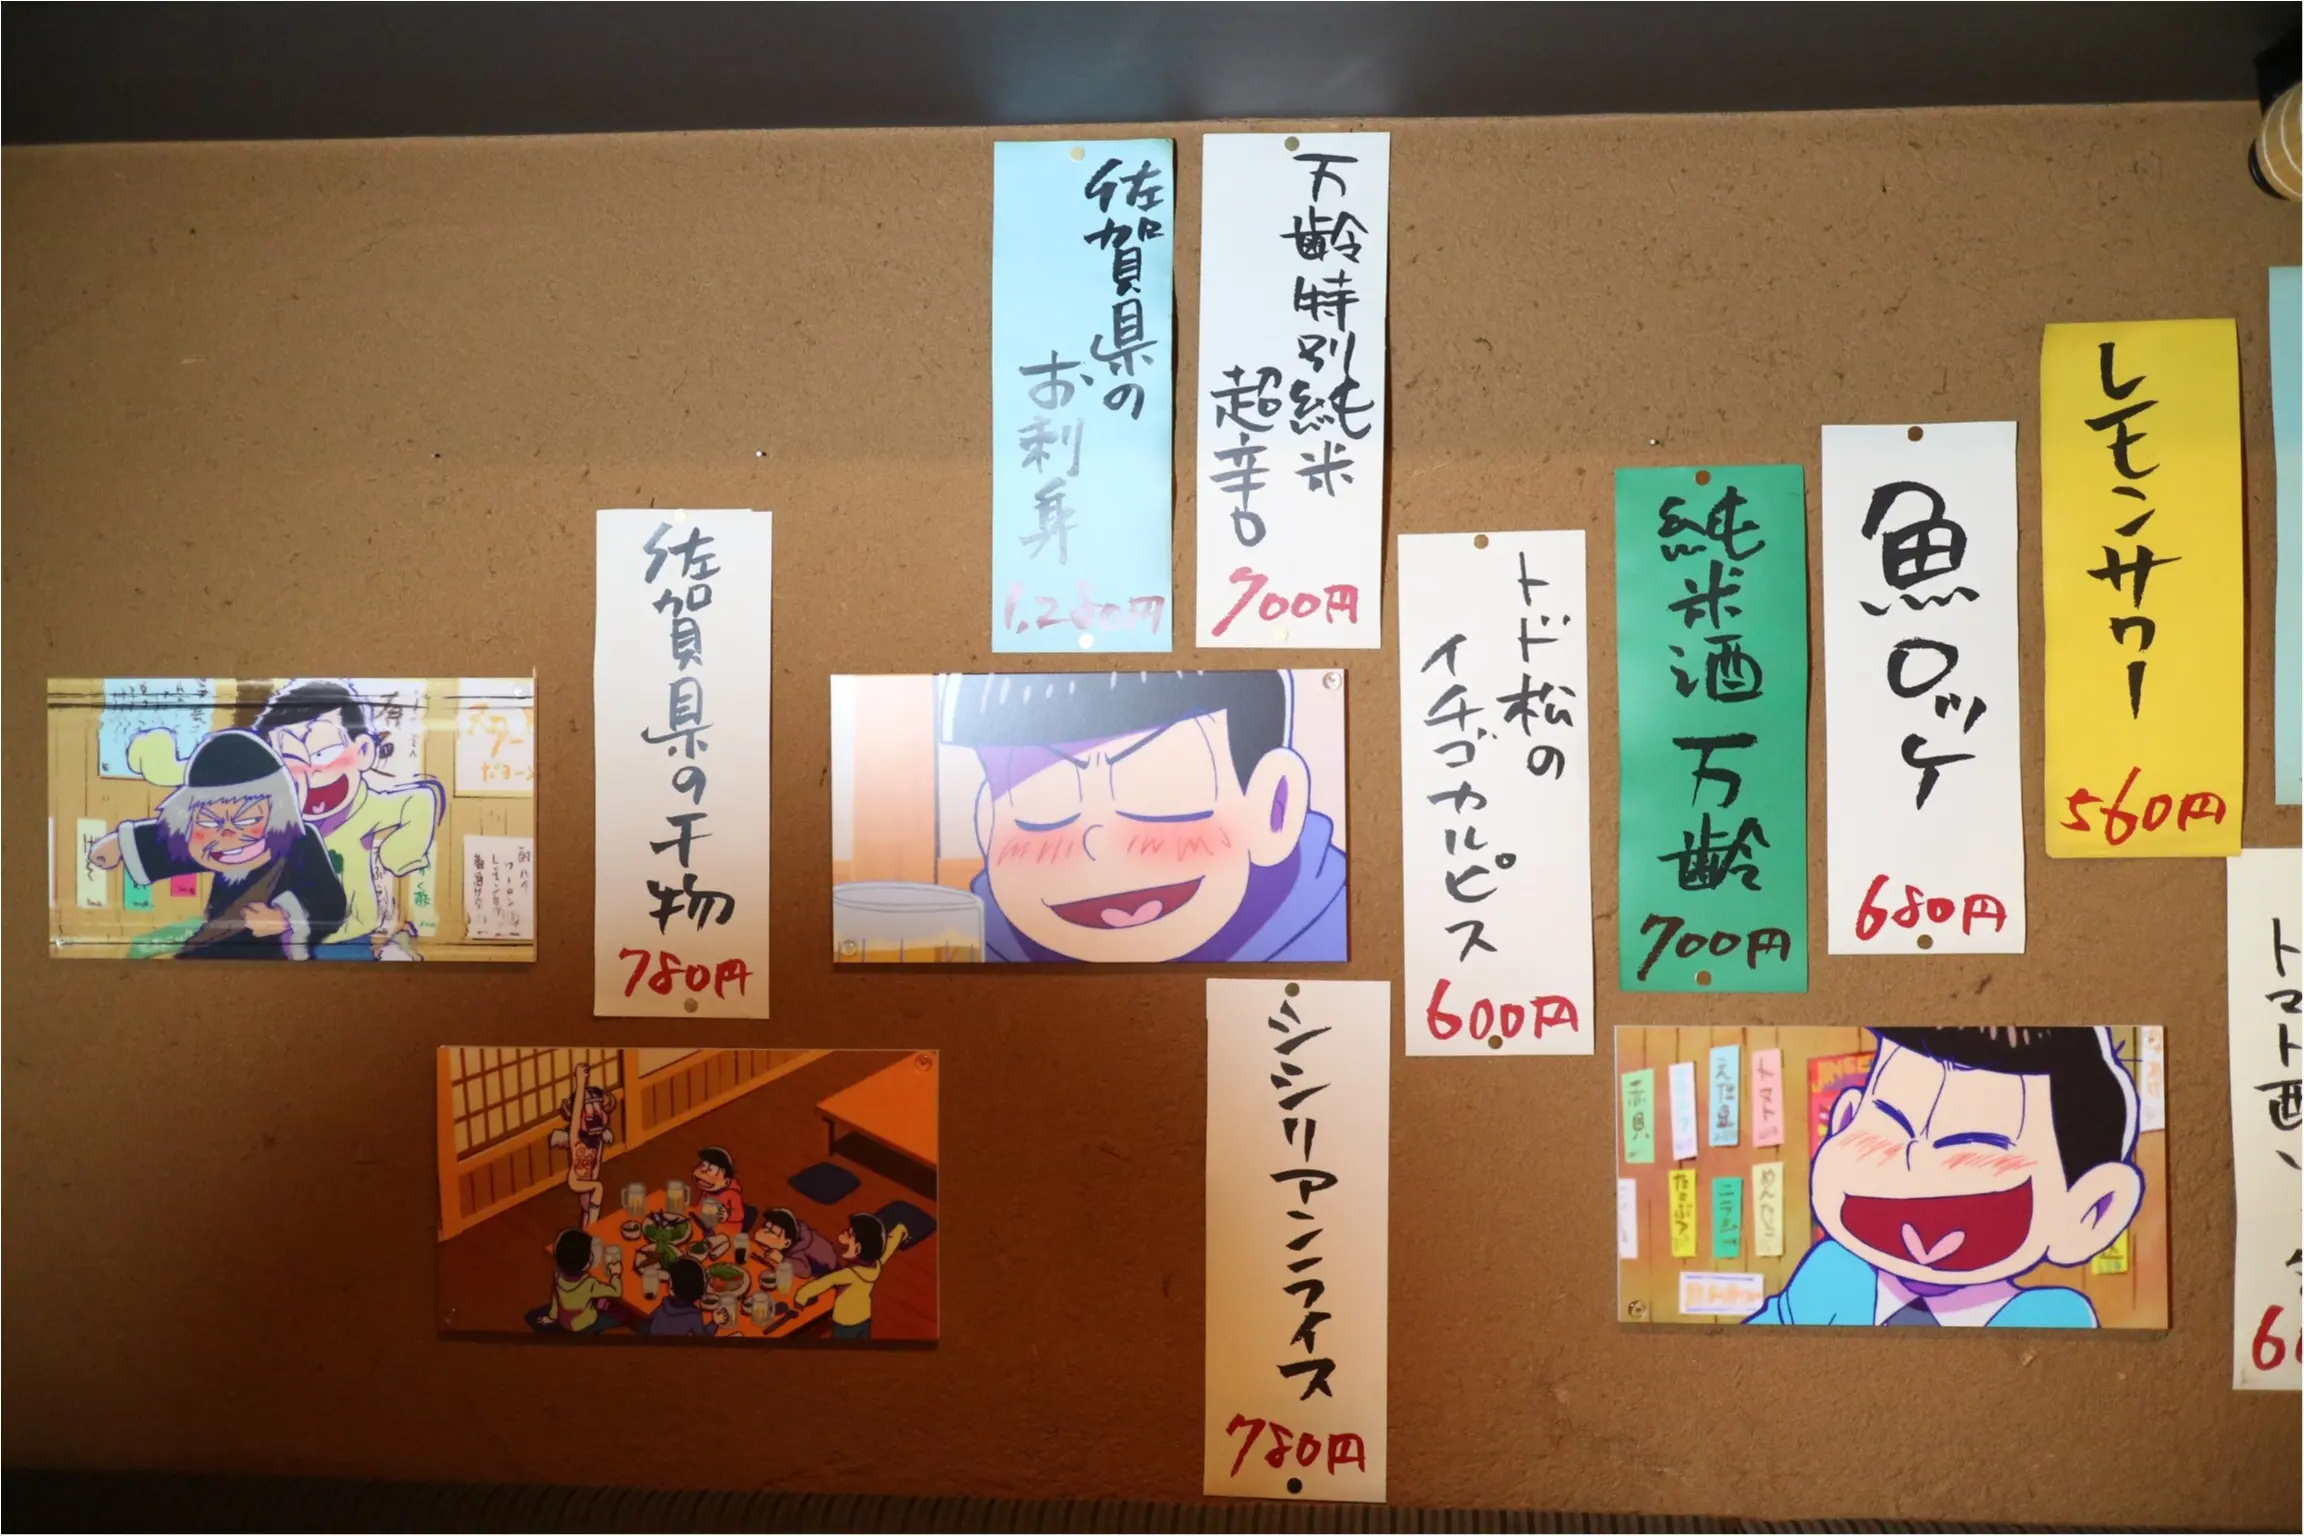 大人気の おそ松さん が佐賀県とコラボ さが松り居酒屋 で六つ子と一緒に飲んできました グルメ Daily More